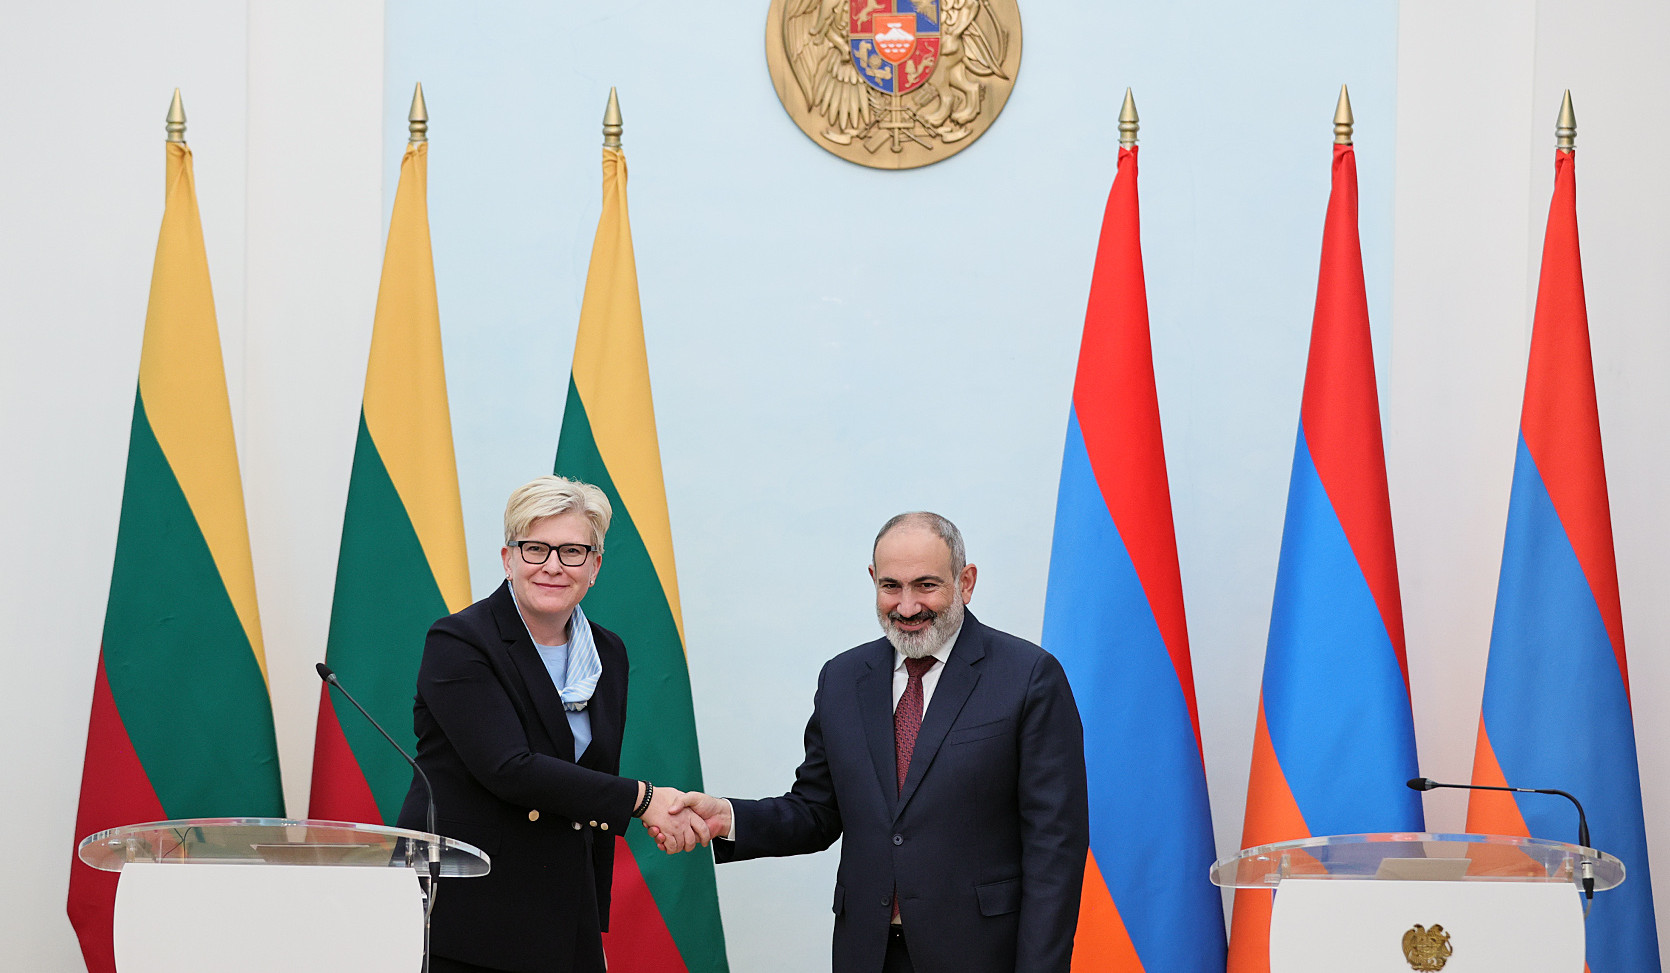 Հայաստանն արժևորում է Լիտվայի հանձնառությունը նպաստելու Հայաստան-ԵՄ գործընկերության խորացմանը. Փաշինյան